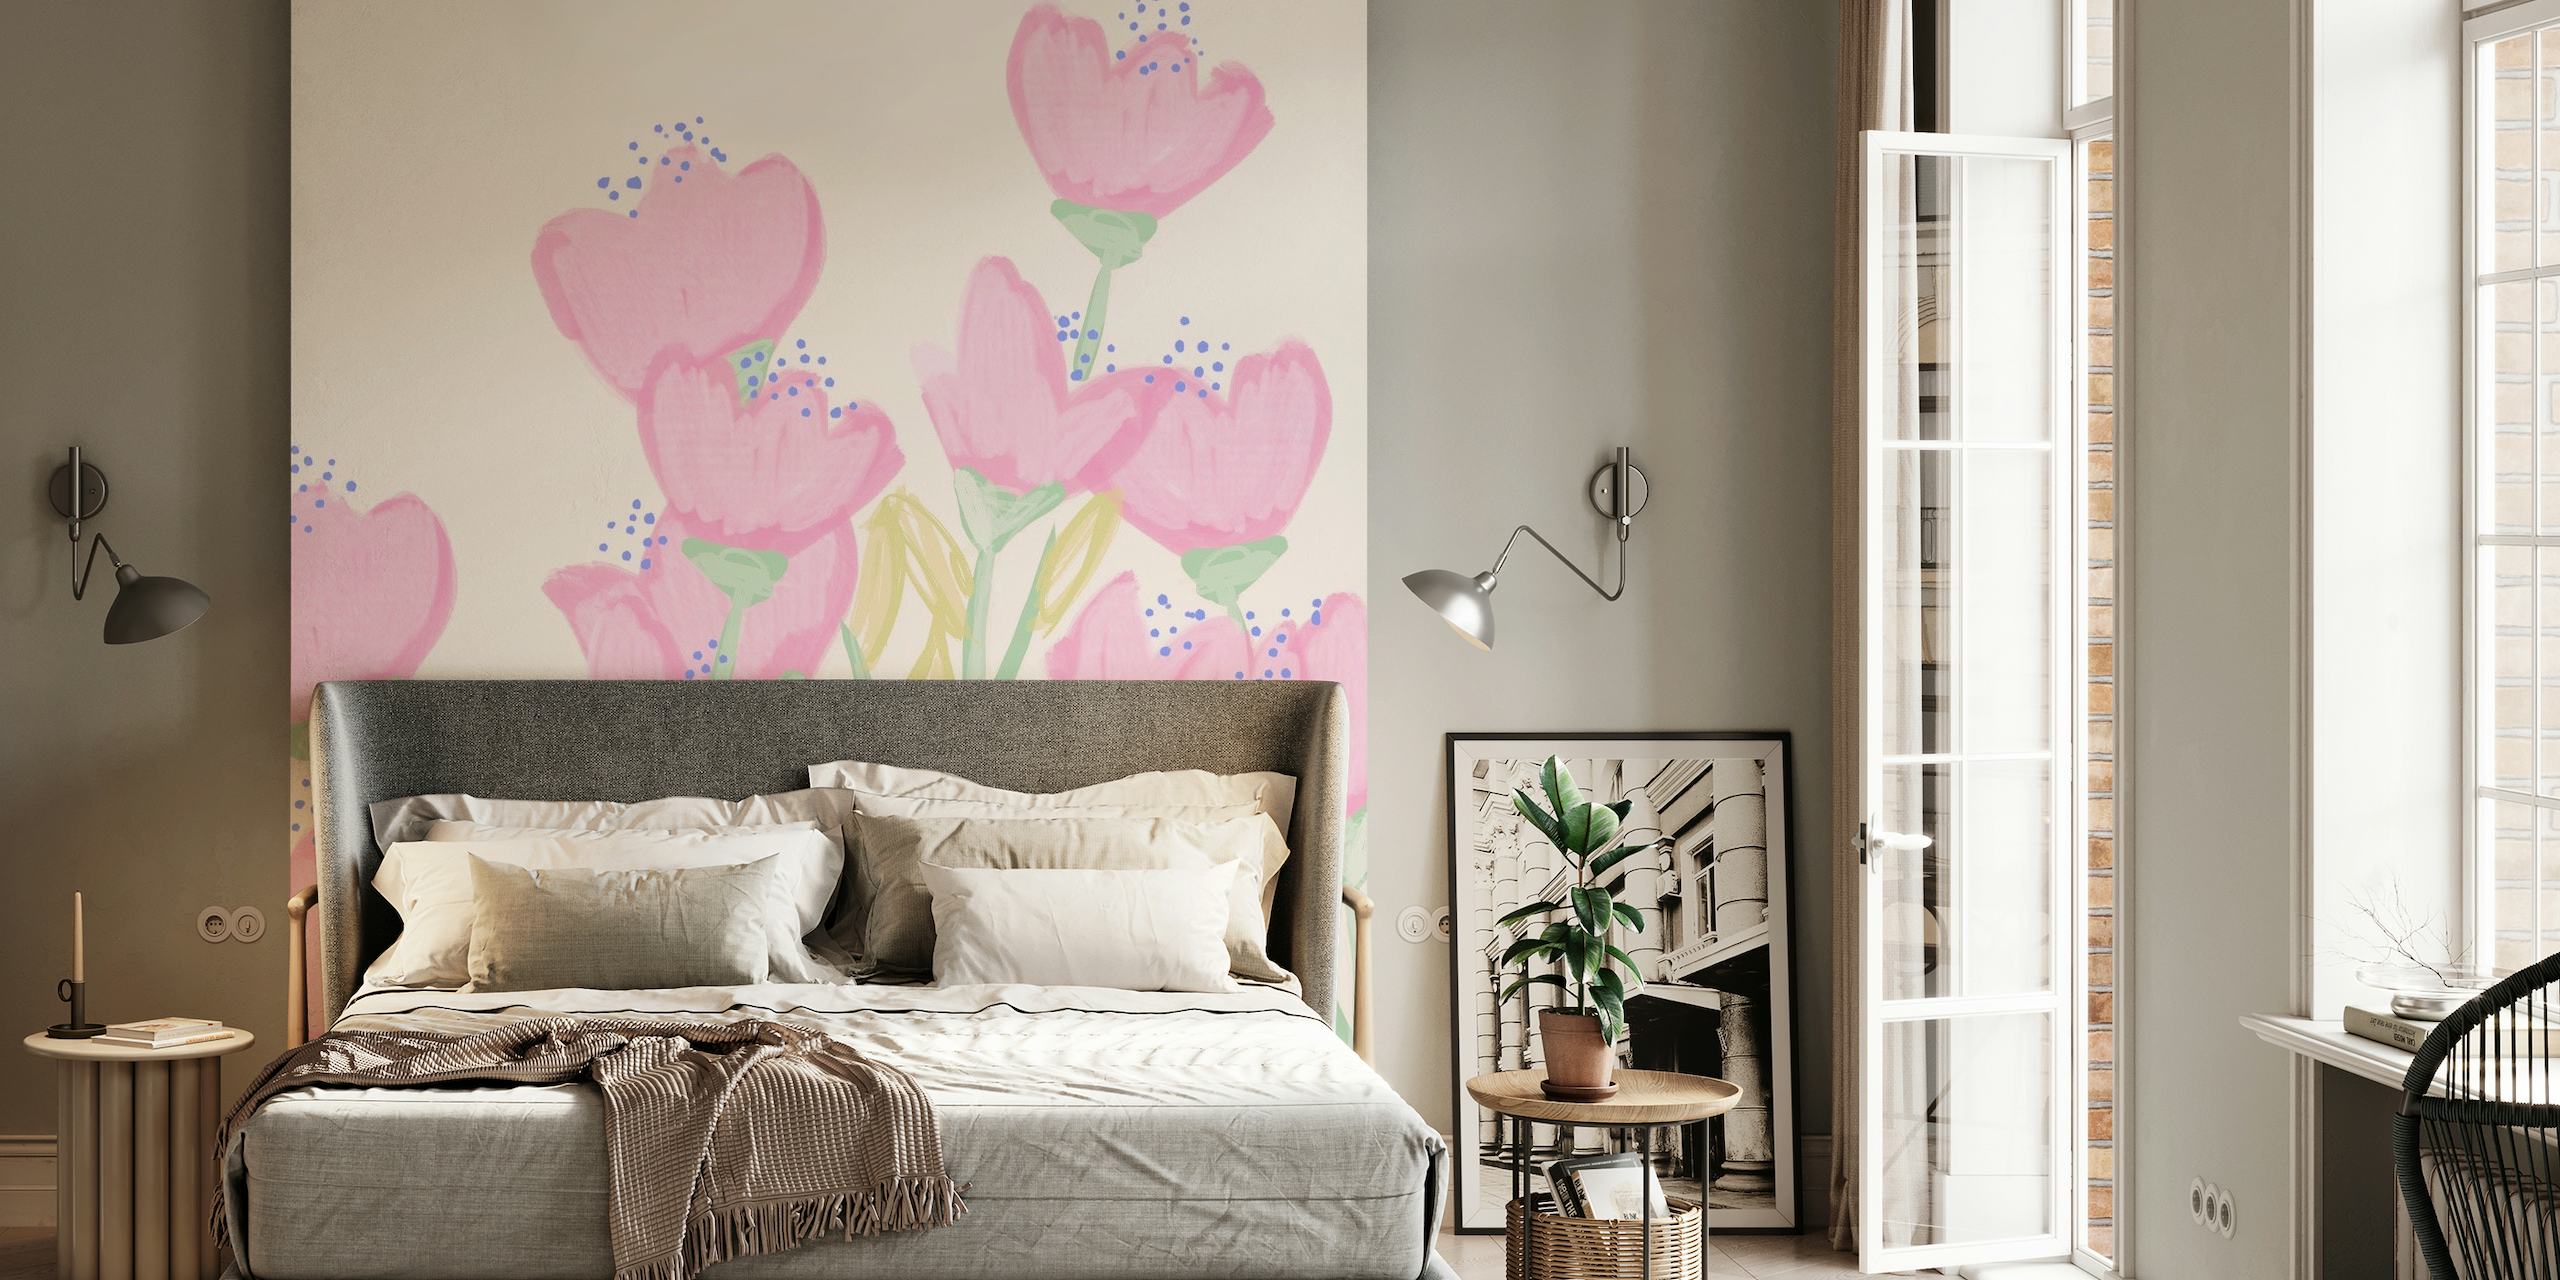 Met de hand geschilderde pastelroze roze bloemen op een zachte muurschildering als achtergrond